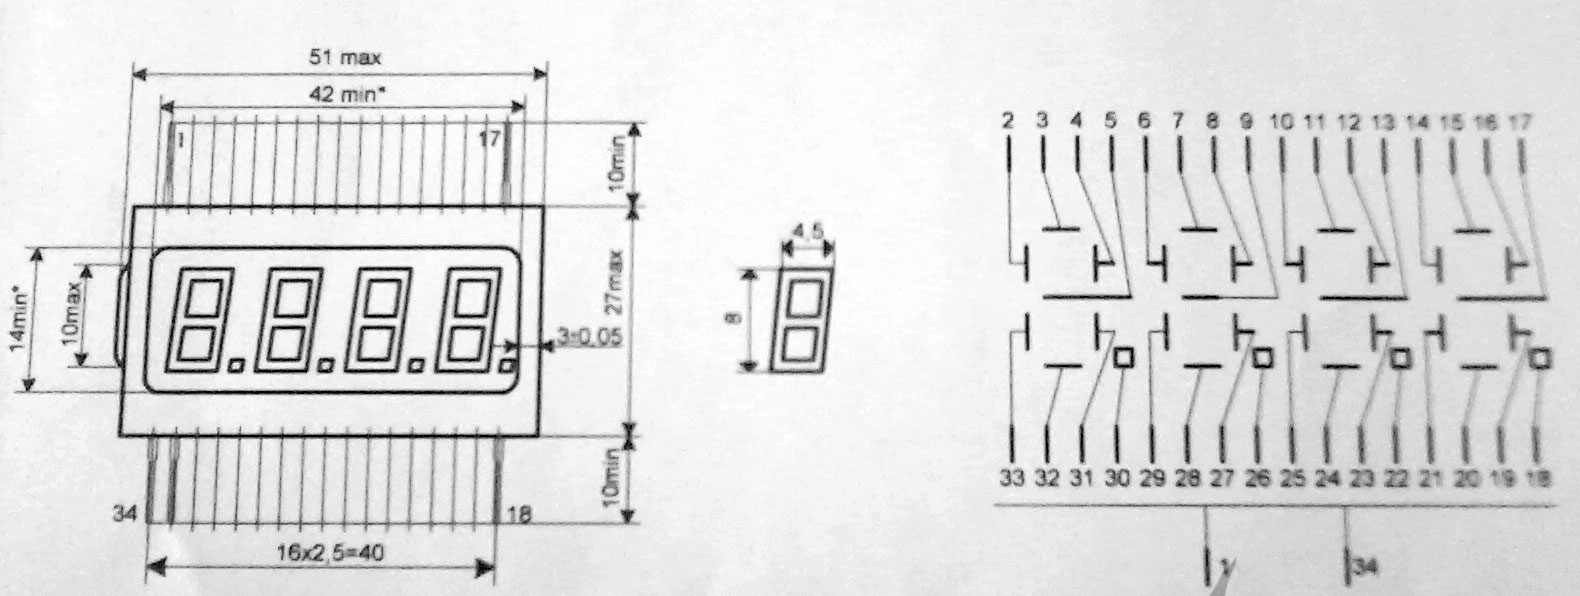 Технические характеристики ИЖЦ5-4/8 Габаритные размеры и схема устройства поданы на Рисунке